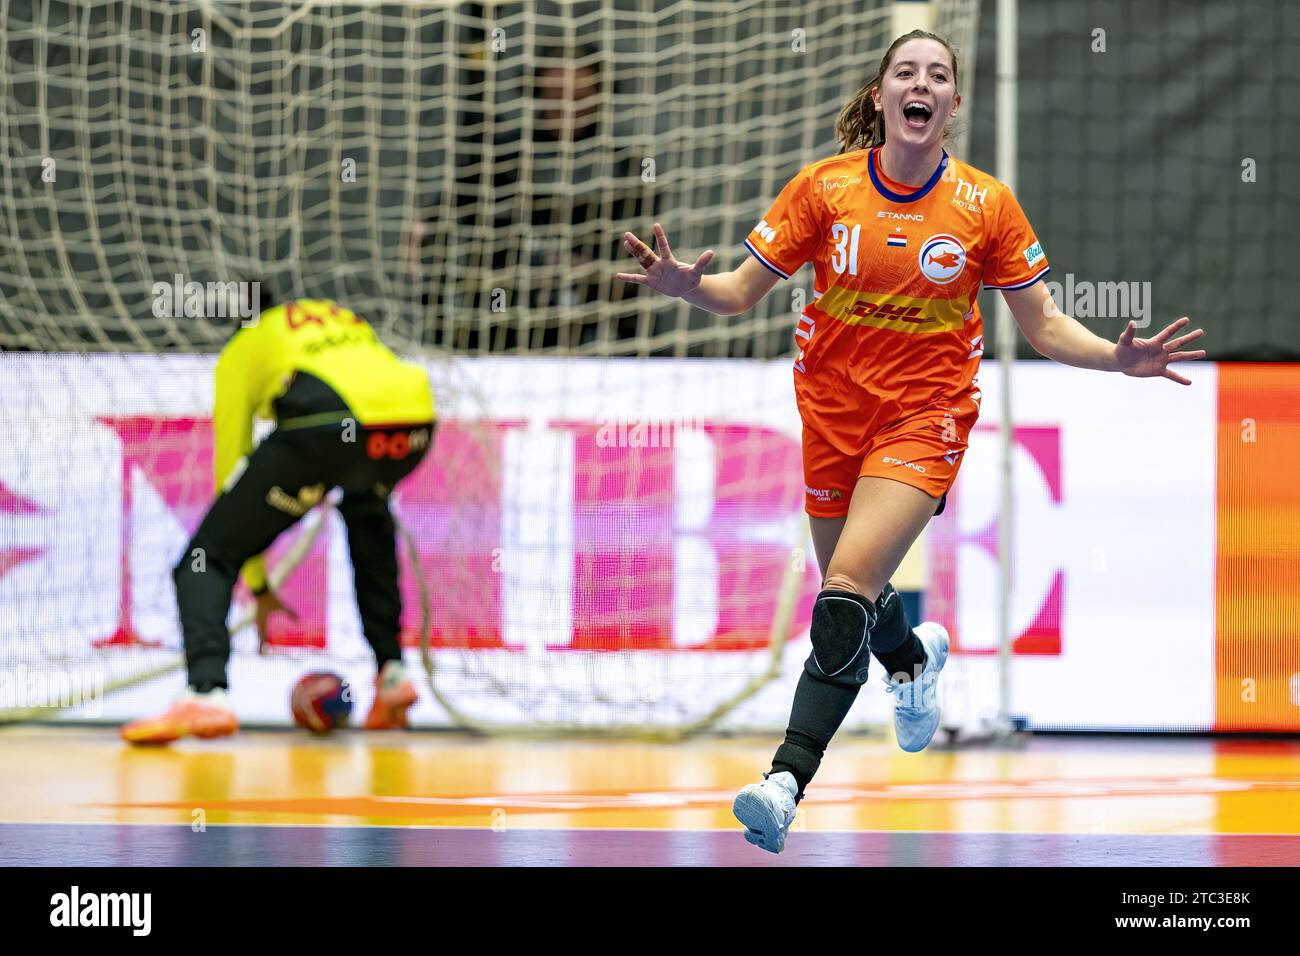 FREDERIKSHAVN - Kelly Vollebregt dei Paesi Bassi in azione contro la Spagna durante il girone principale IV della Coppa del mondo di pallamano all'Arena Nord. ANP RONALD HOOGENDOORN Foto Stock